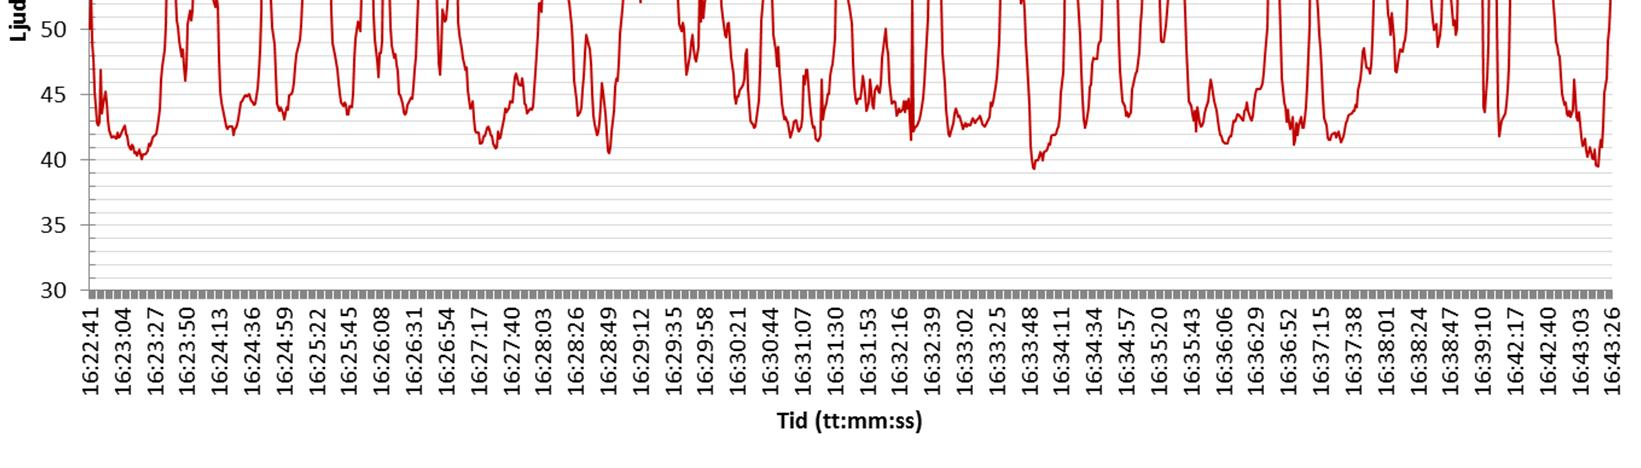 Eftersom vägtrafiken på Vramsvägen kontinuerligt störde mätningen av industribuller, utfördes en loggande ljudmätning med intervall 1s (se figur nedan).